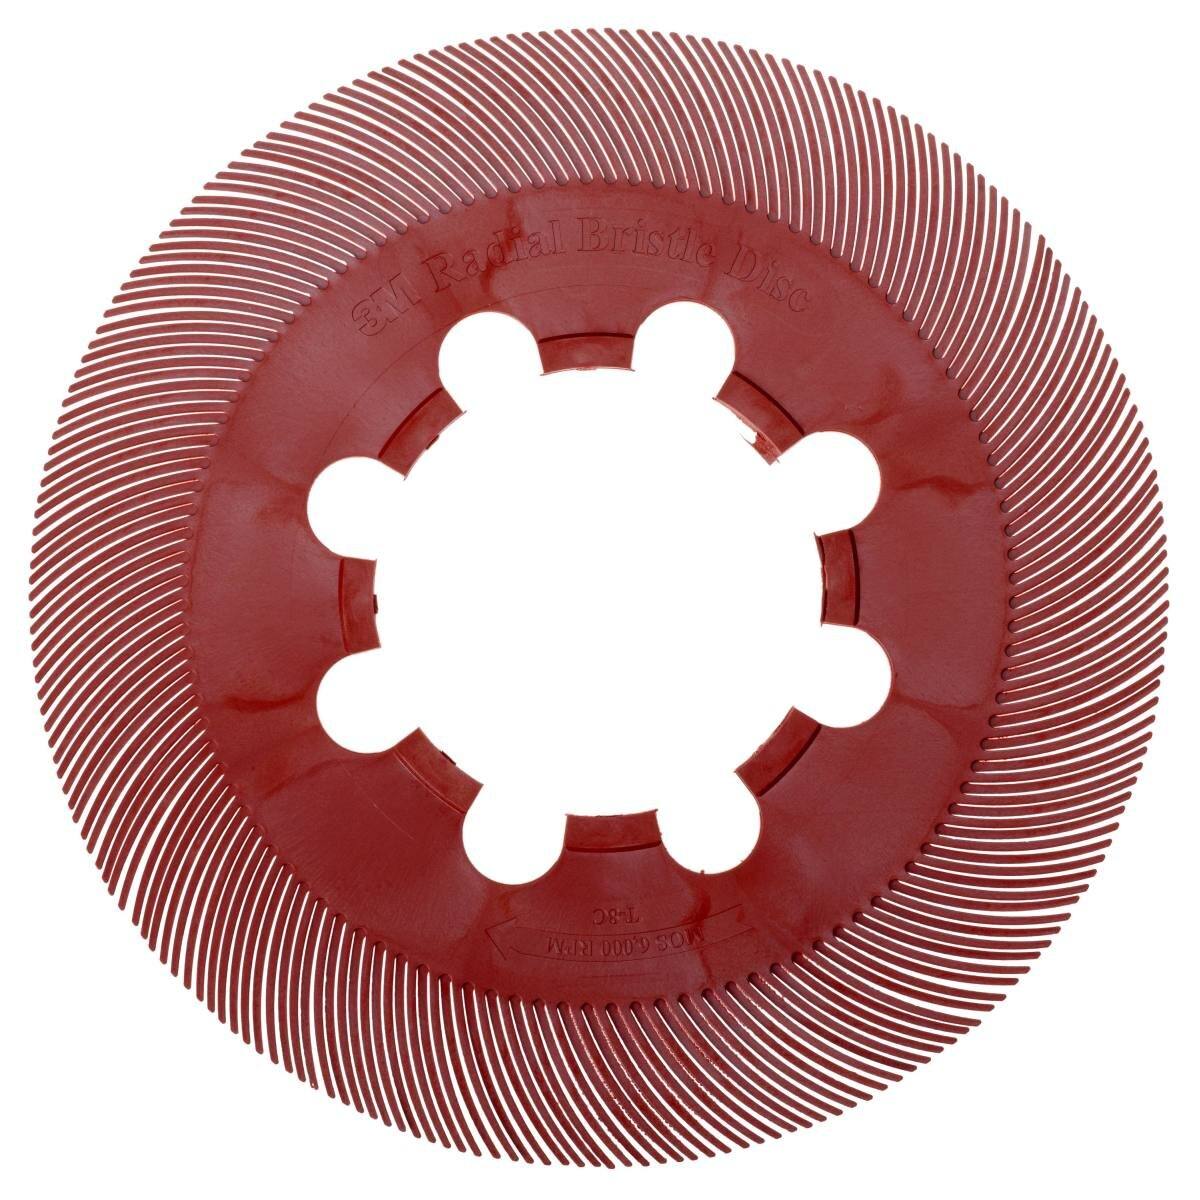 3M Scotch-Brite a segmenti singoli radiali BB-ZB, rosso, 193,5 mm, P220, tipo C, confezione=70 pezzi